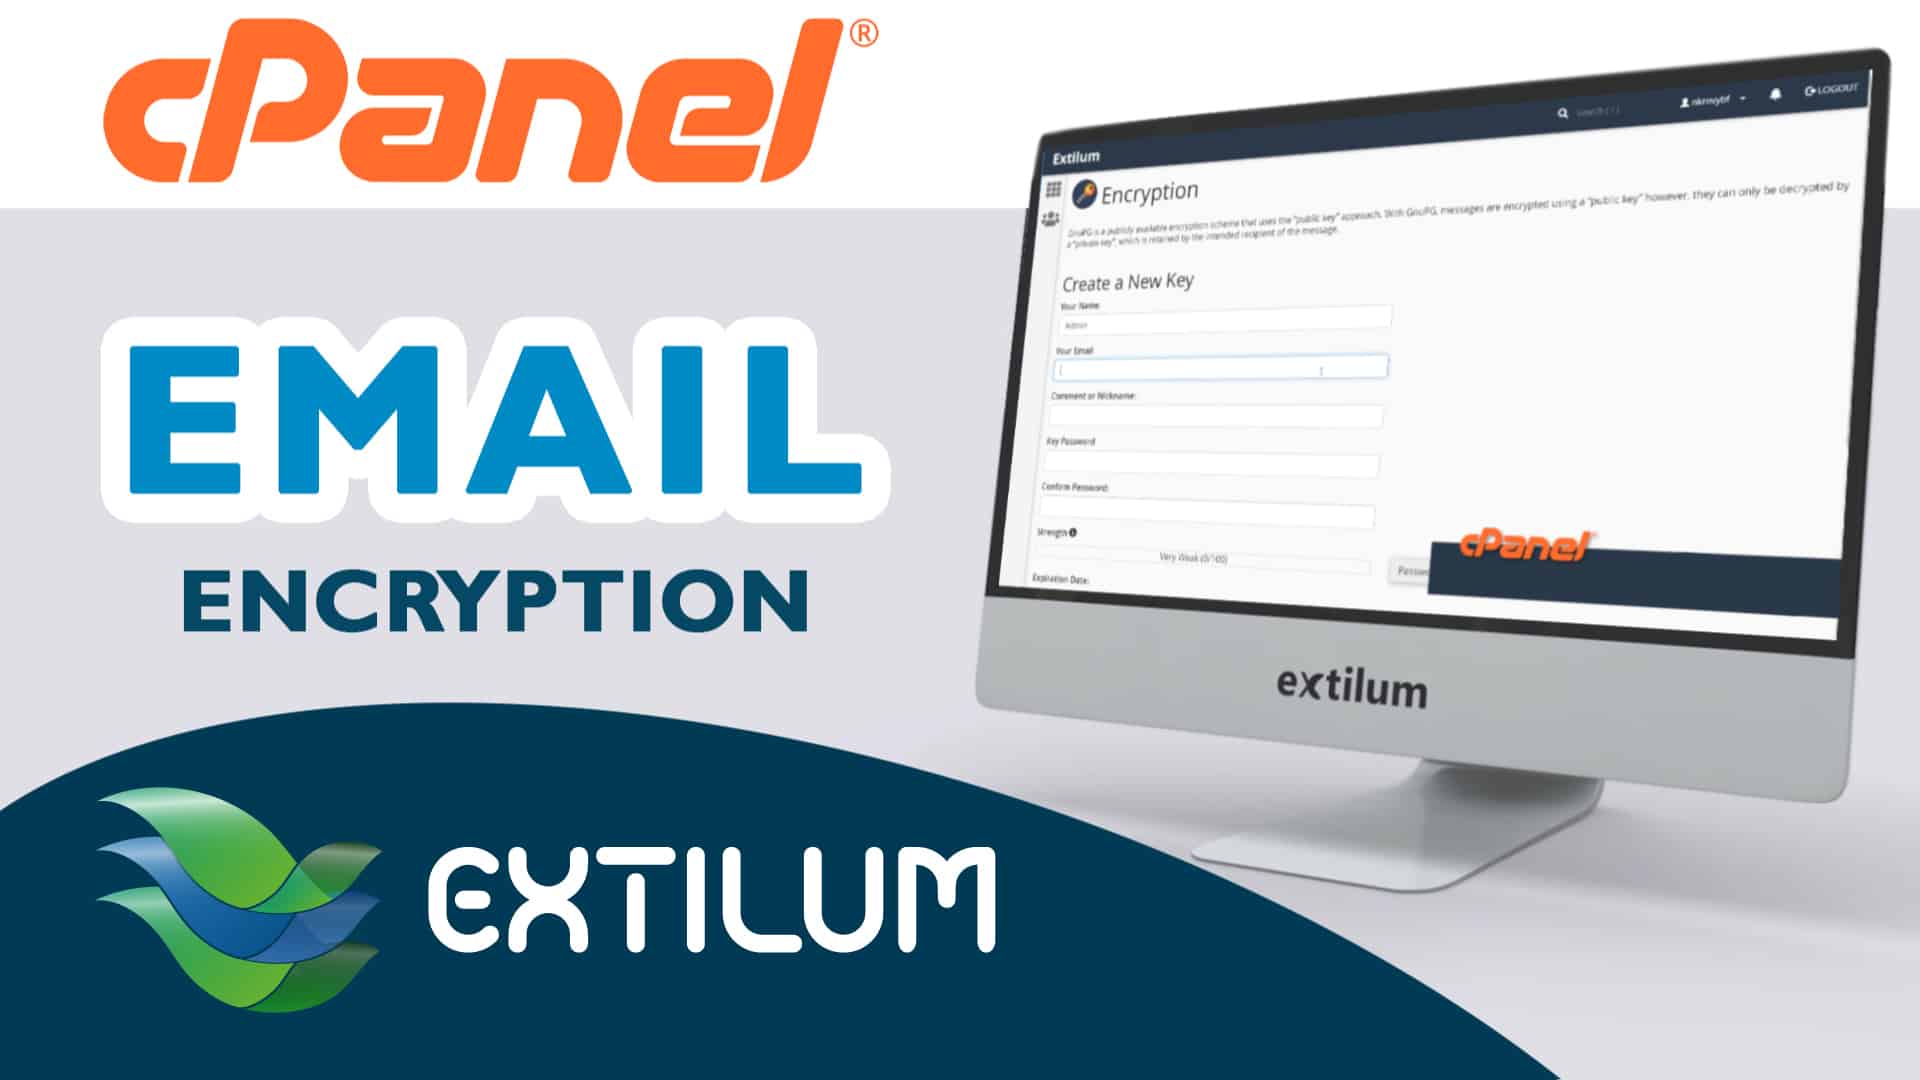 Extilum cPanel - Email encryption